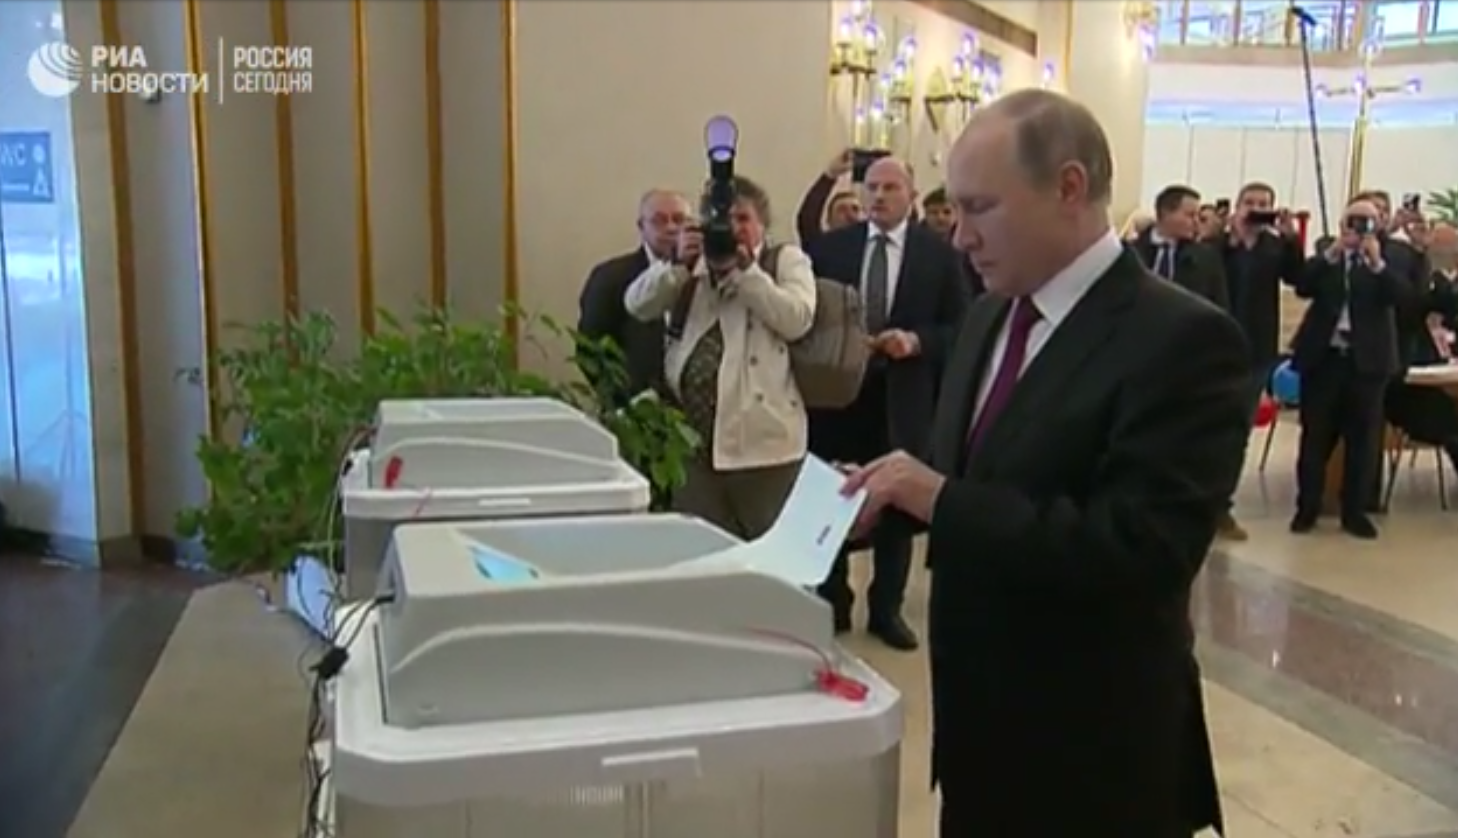 Выборы президента России — 2018. Голосуют кандидаты в президенты